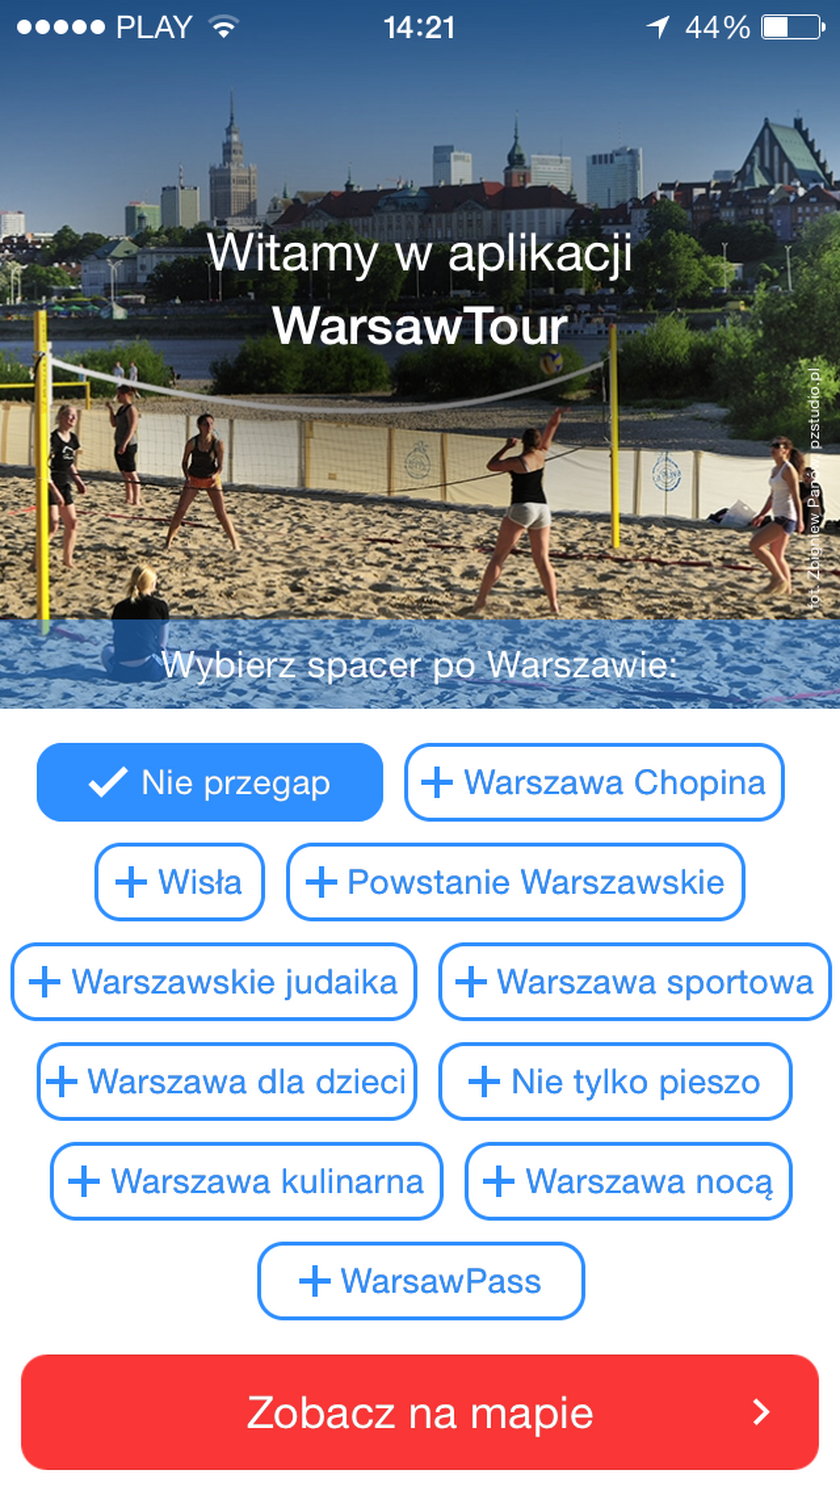 WarsawTour